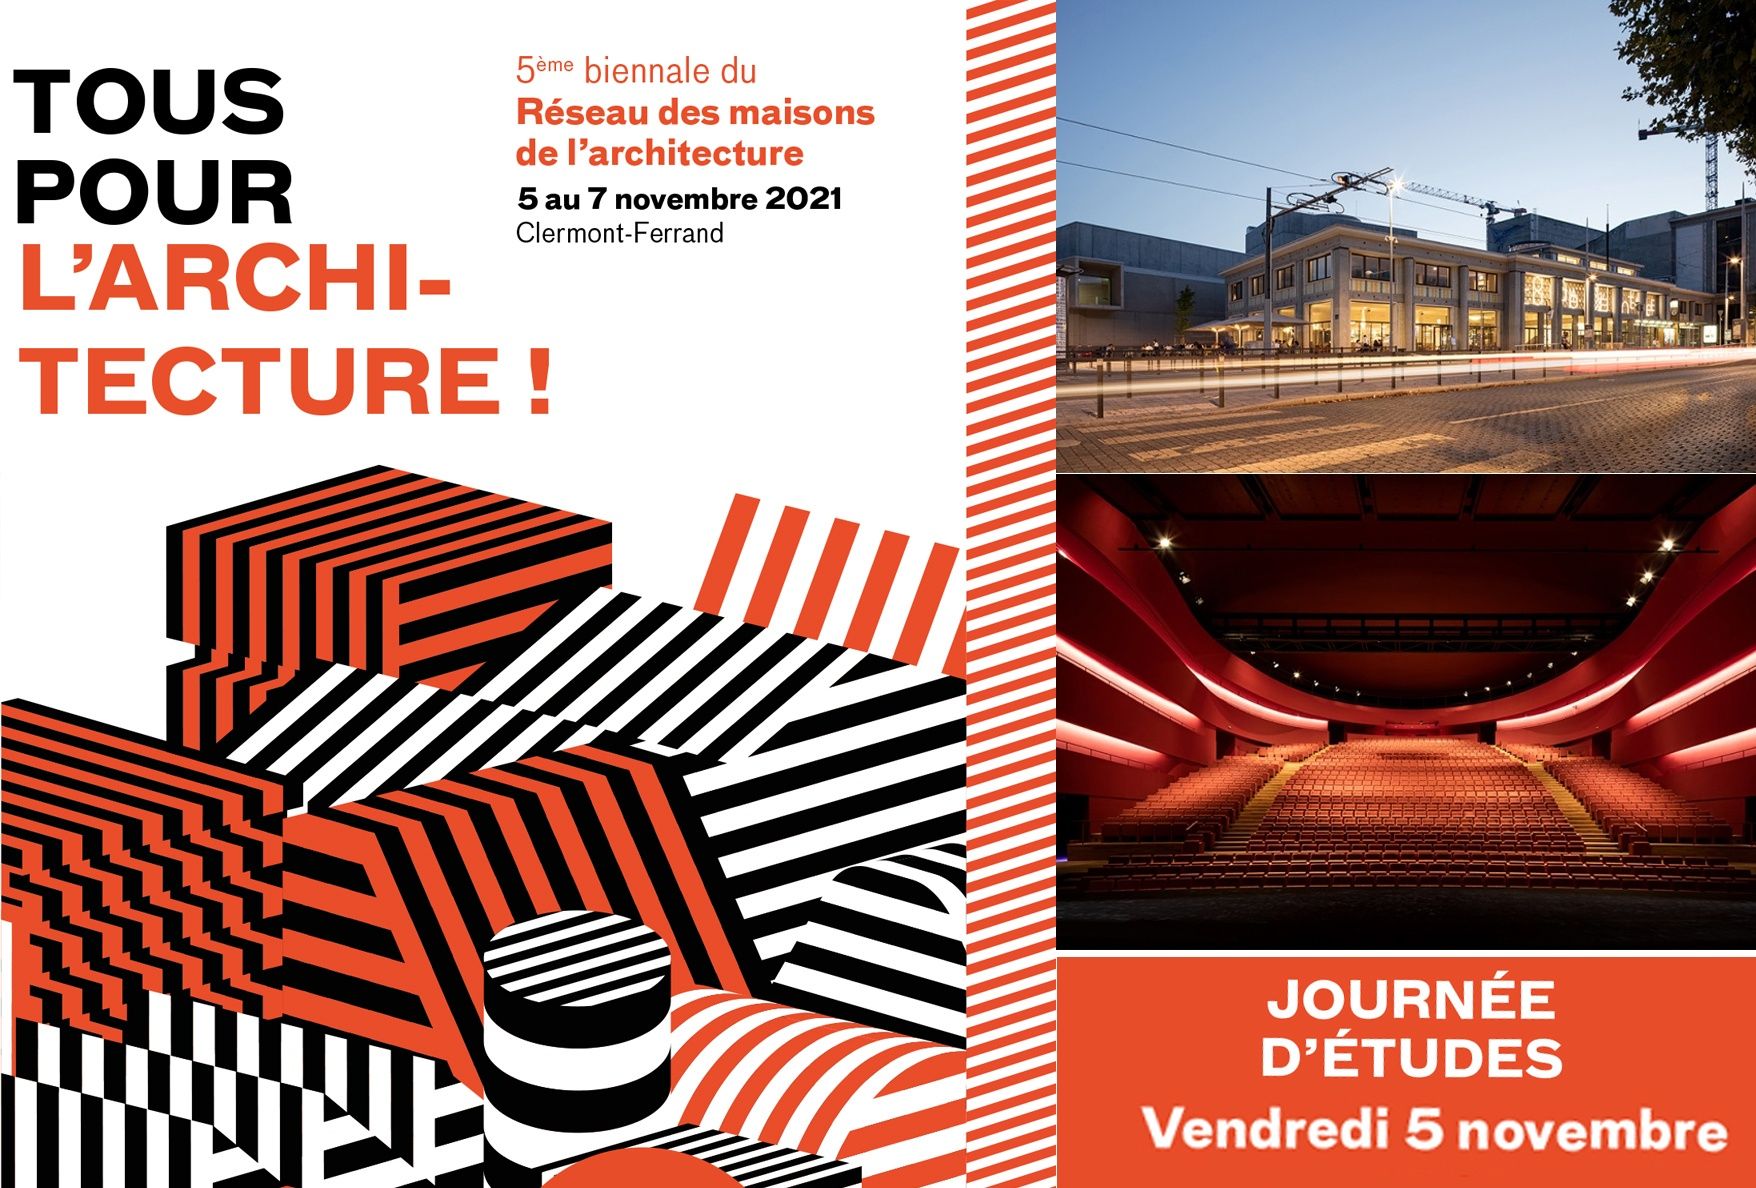 Rendez-vous à Clermont-Ferrand pour la biennale d’architecture